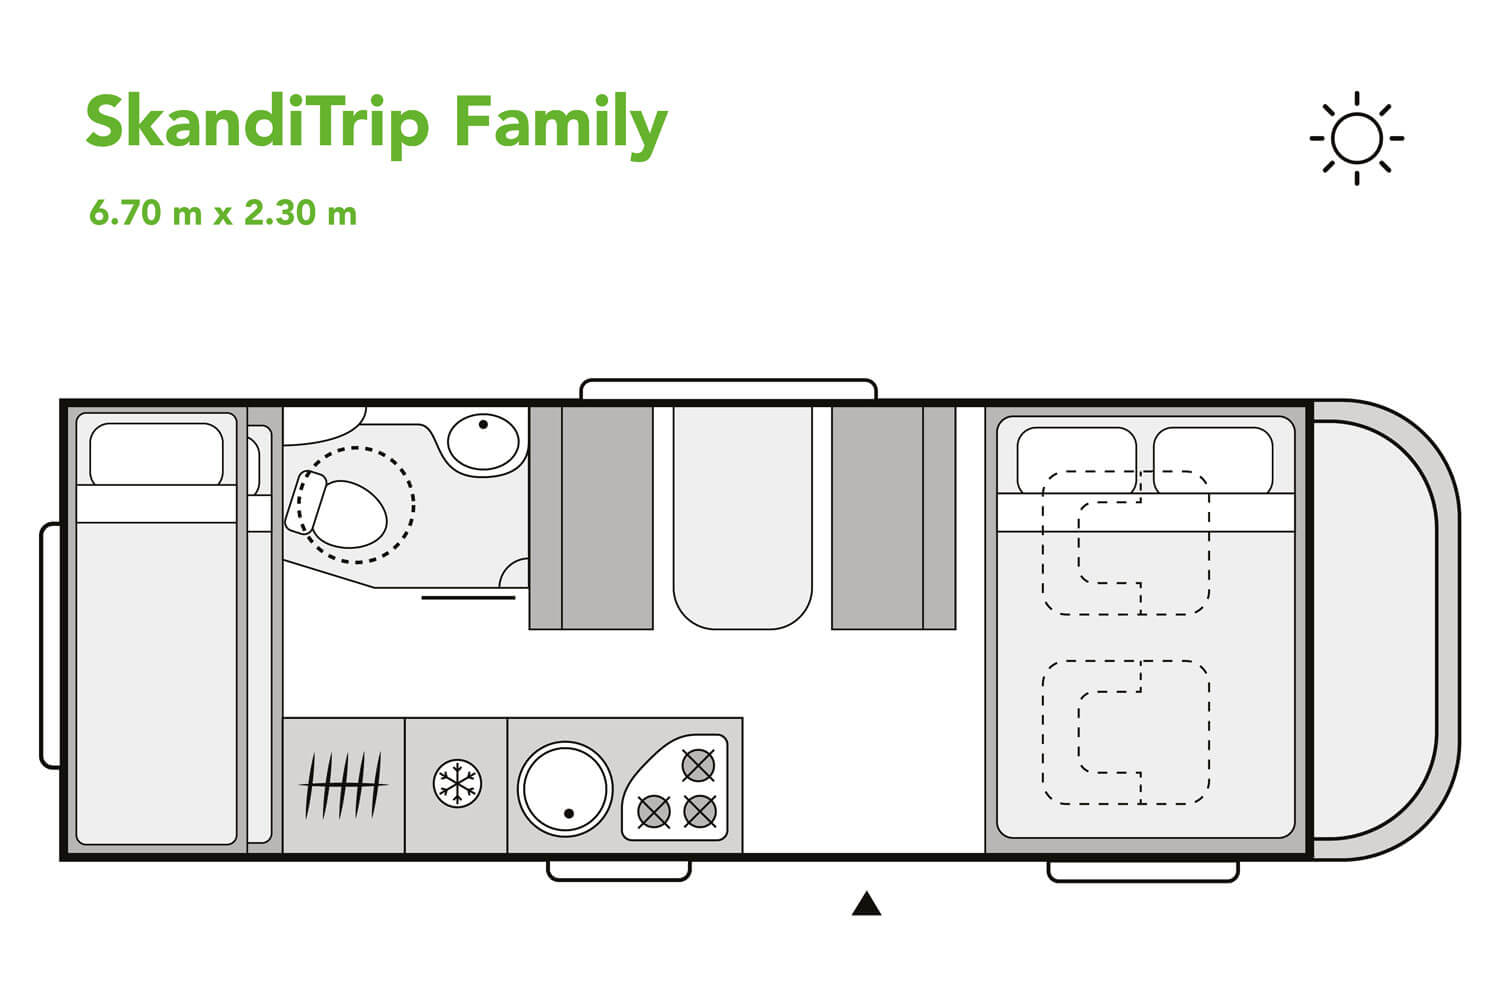 SkandiTrip family motorhome night time blueprint